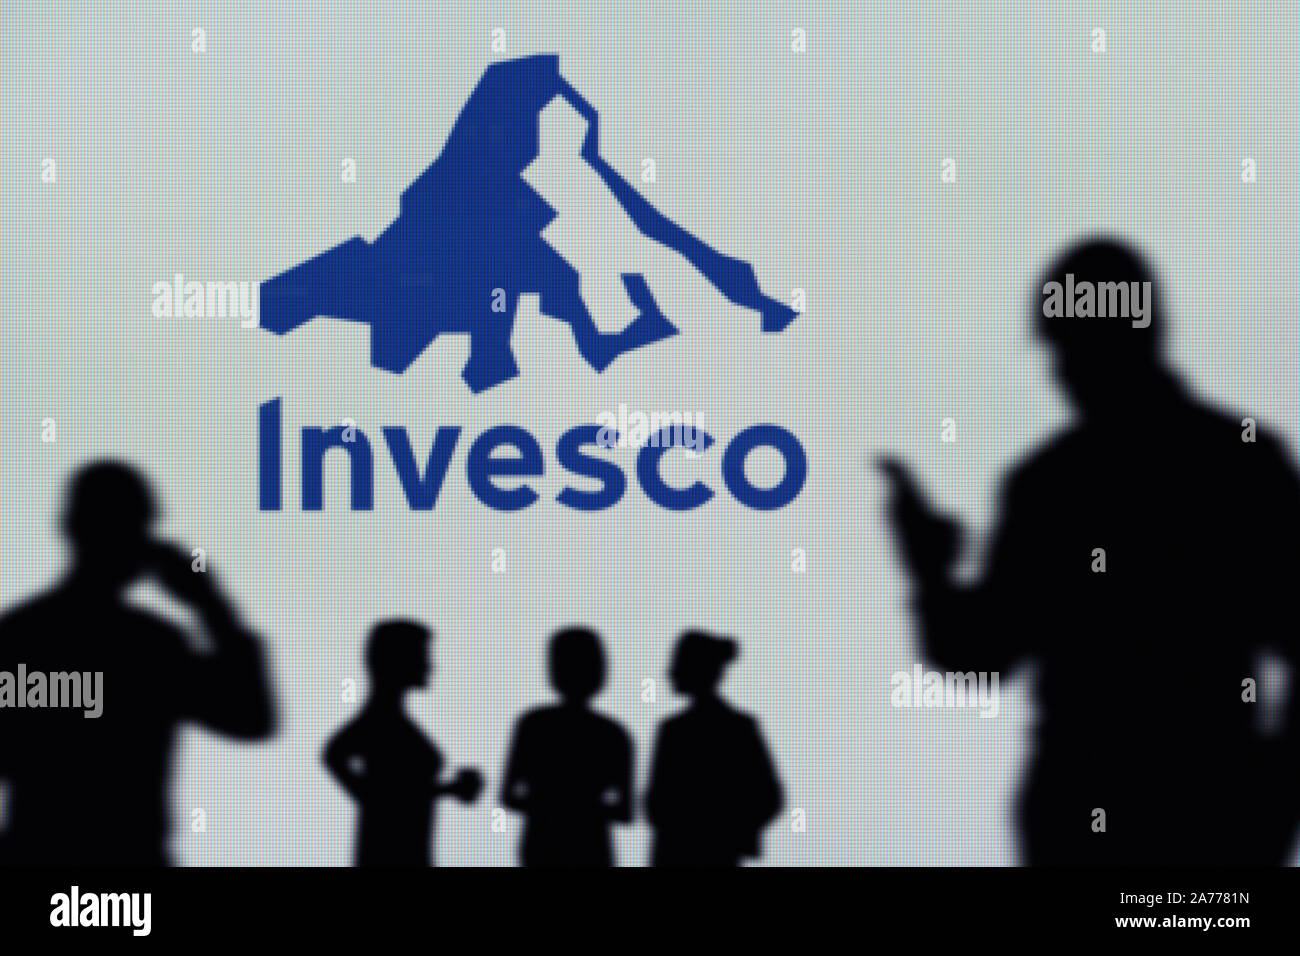 L'Invesco logo è visibile su uno schermo a LED in background mentre si profila una persona utilizza uno smartphone (solo uso editoriale) Foto Stock